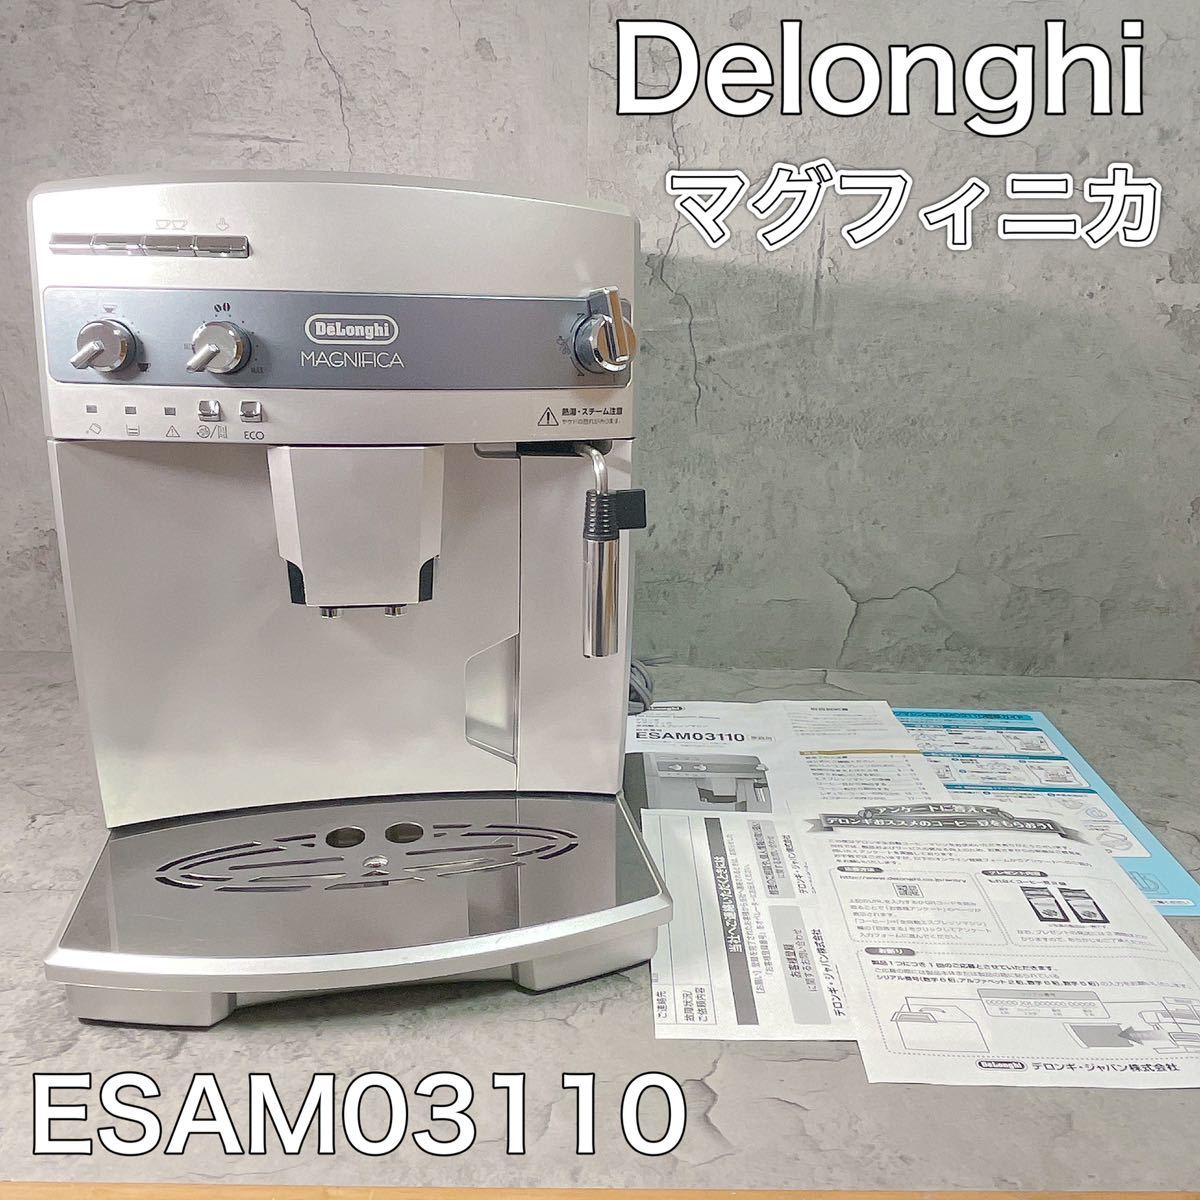 デロンギ マグニフィカ 全自動エスプレッソマシン ESAM03110全自動